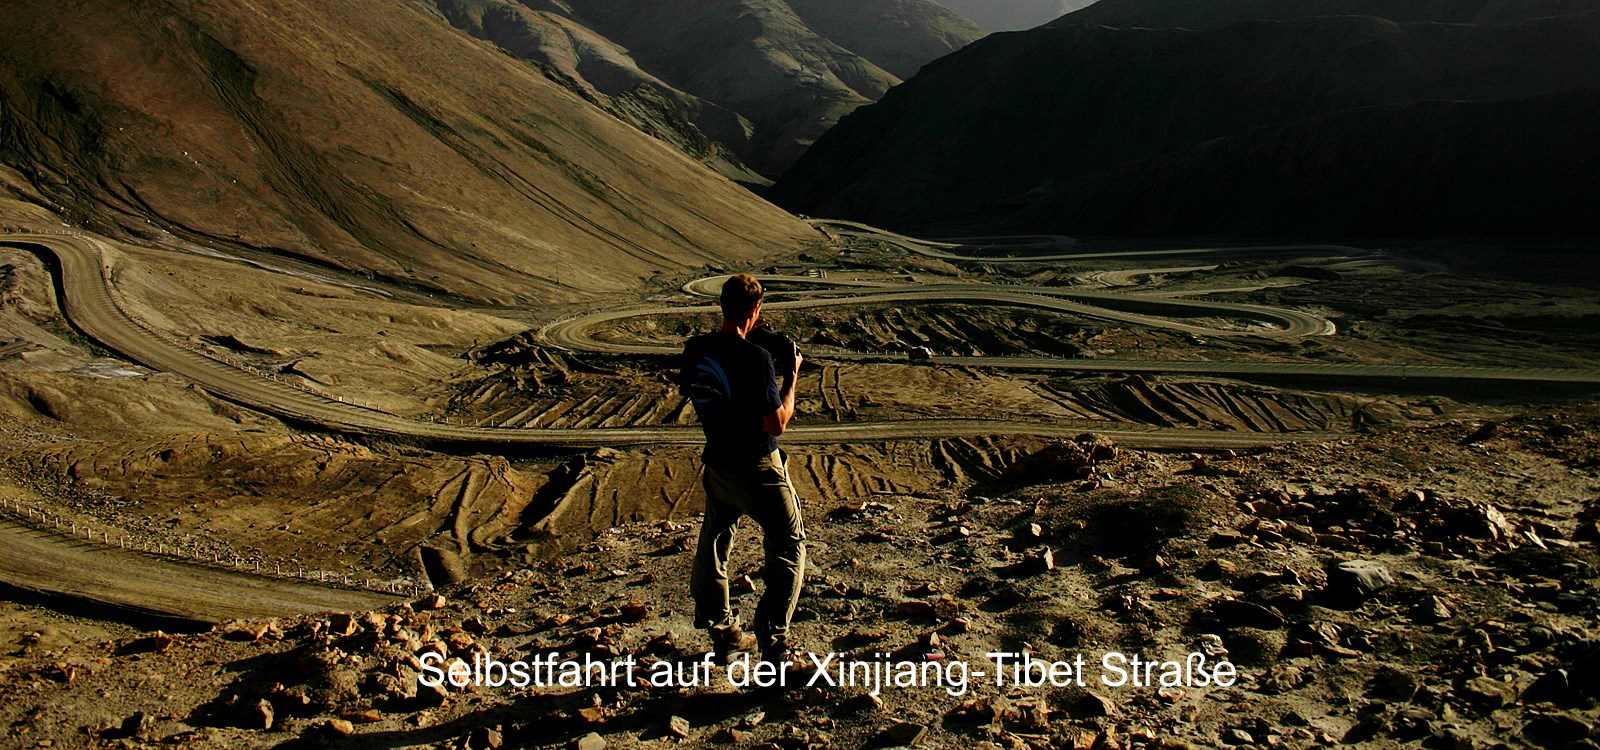 Selbstfahrt auf der Xinjiang-Tibet Straße